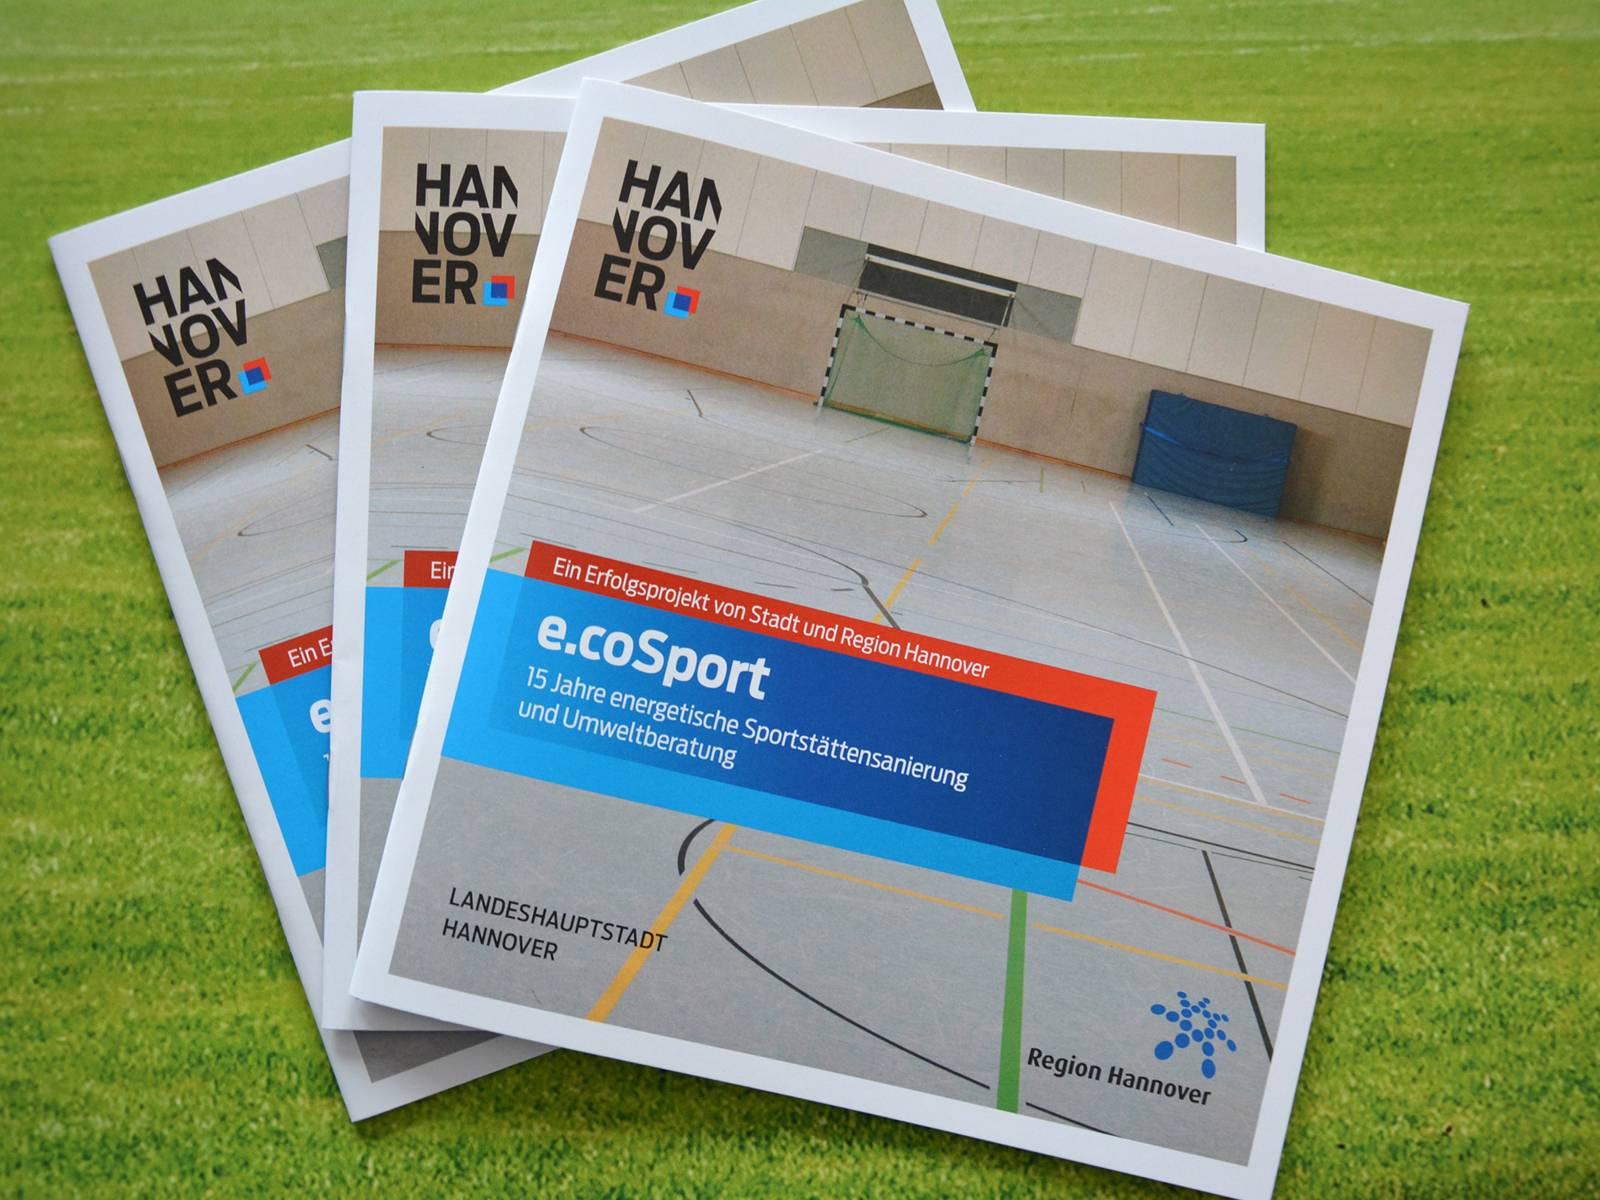 Broschüren mit dem Titel "e.coSport - 15 Jahre energetische Sportstättensanierung"